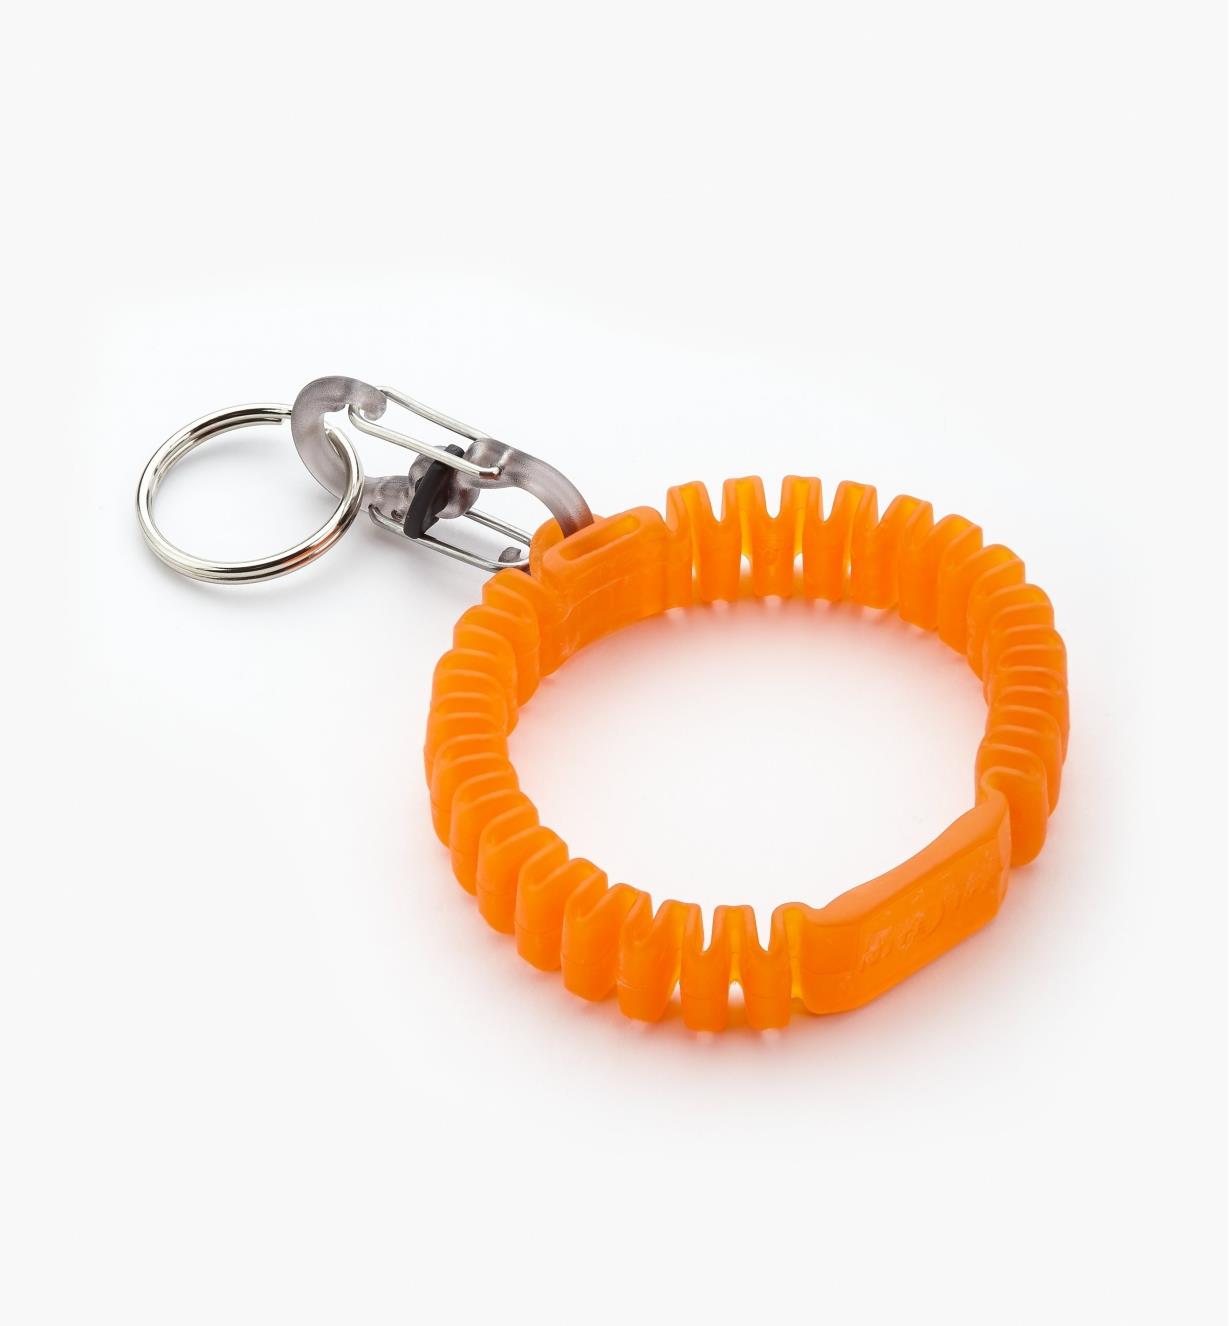 68K0941 - Orange Key Band-It Wristband